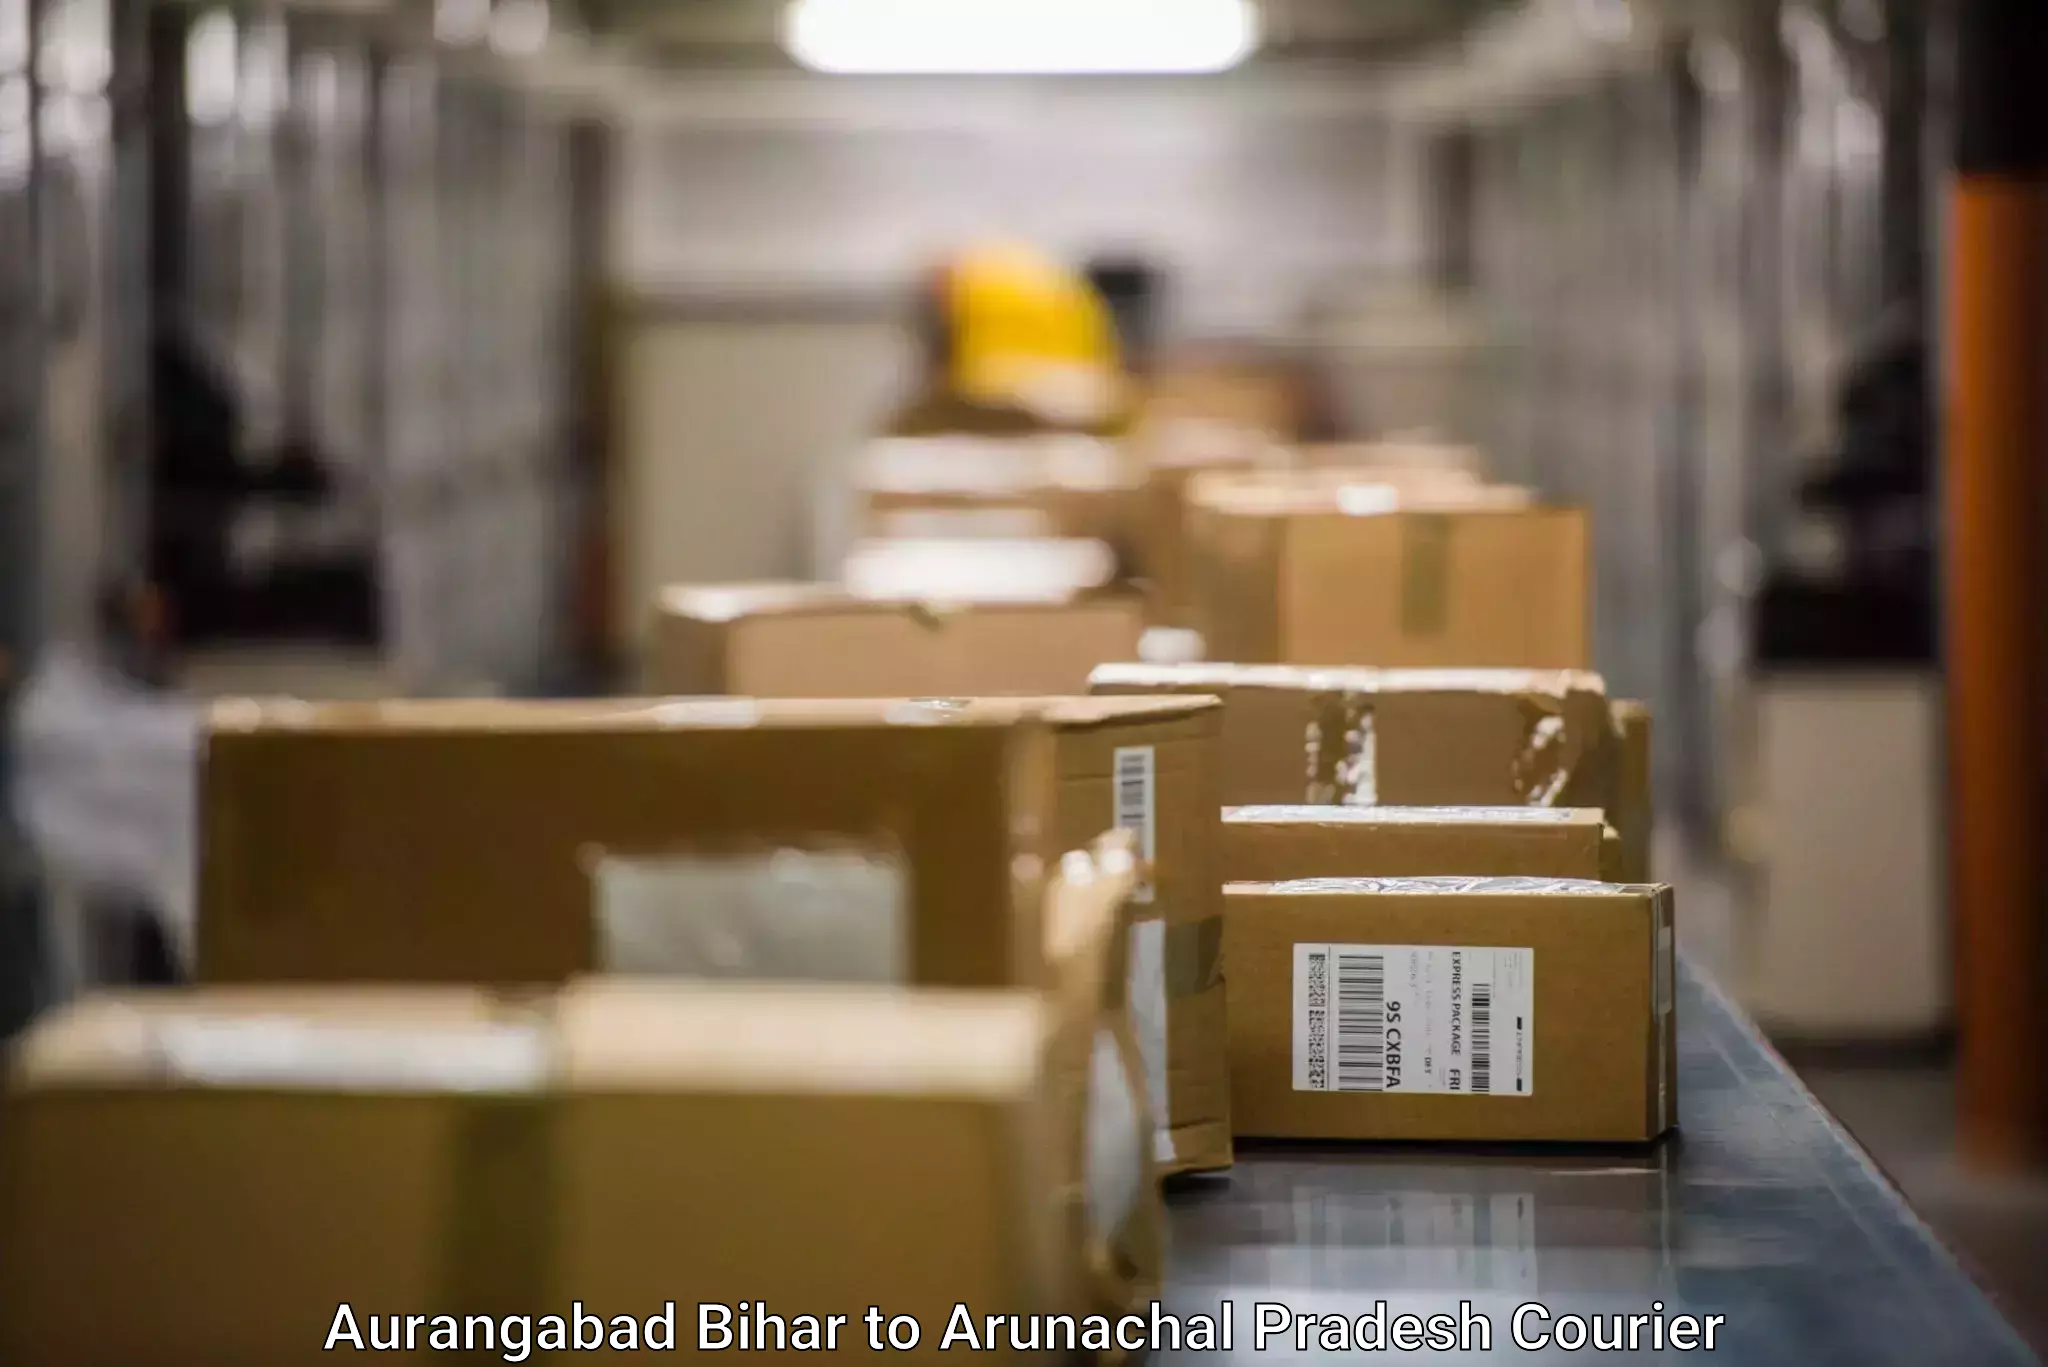 Holiday shipping services Aurangabad Bihar to Dibang Valley